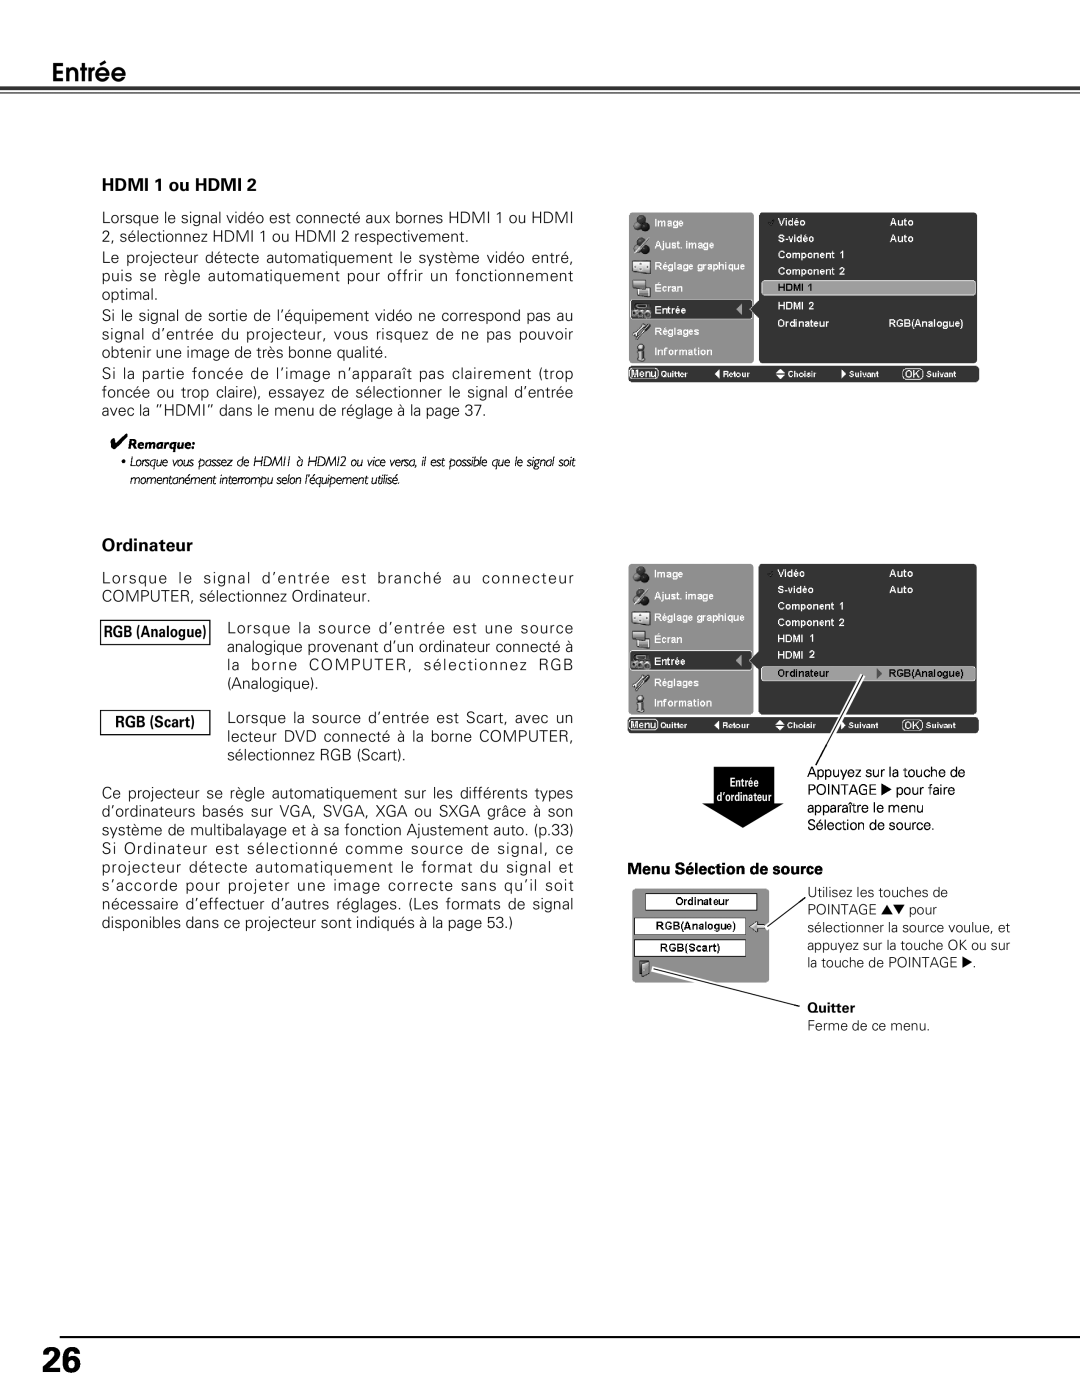 Sanyo PLV-Z5BK manual Entrée, HDMI 1 ou HDMI, Ordinateur, Menu Sélection de source 